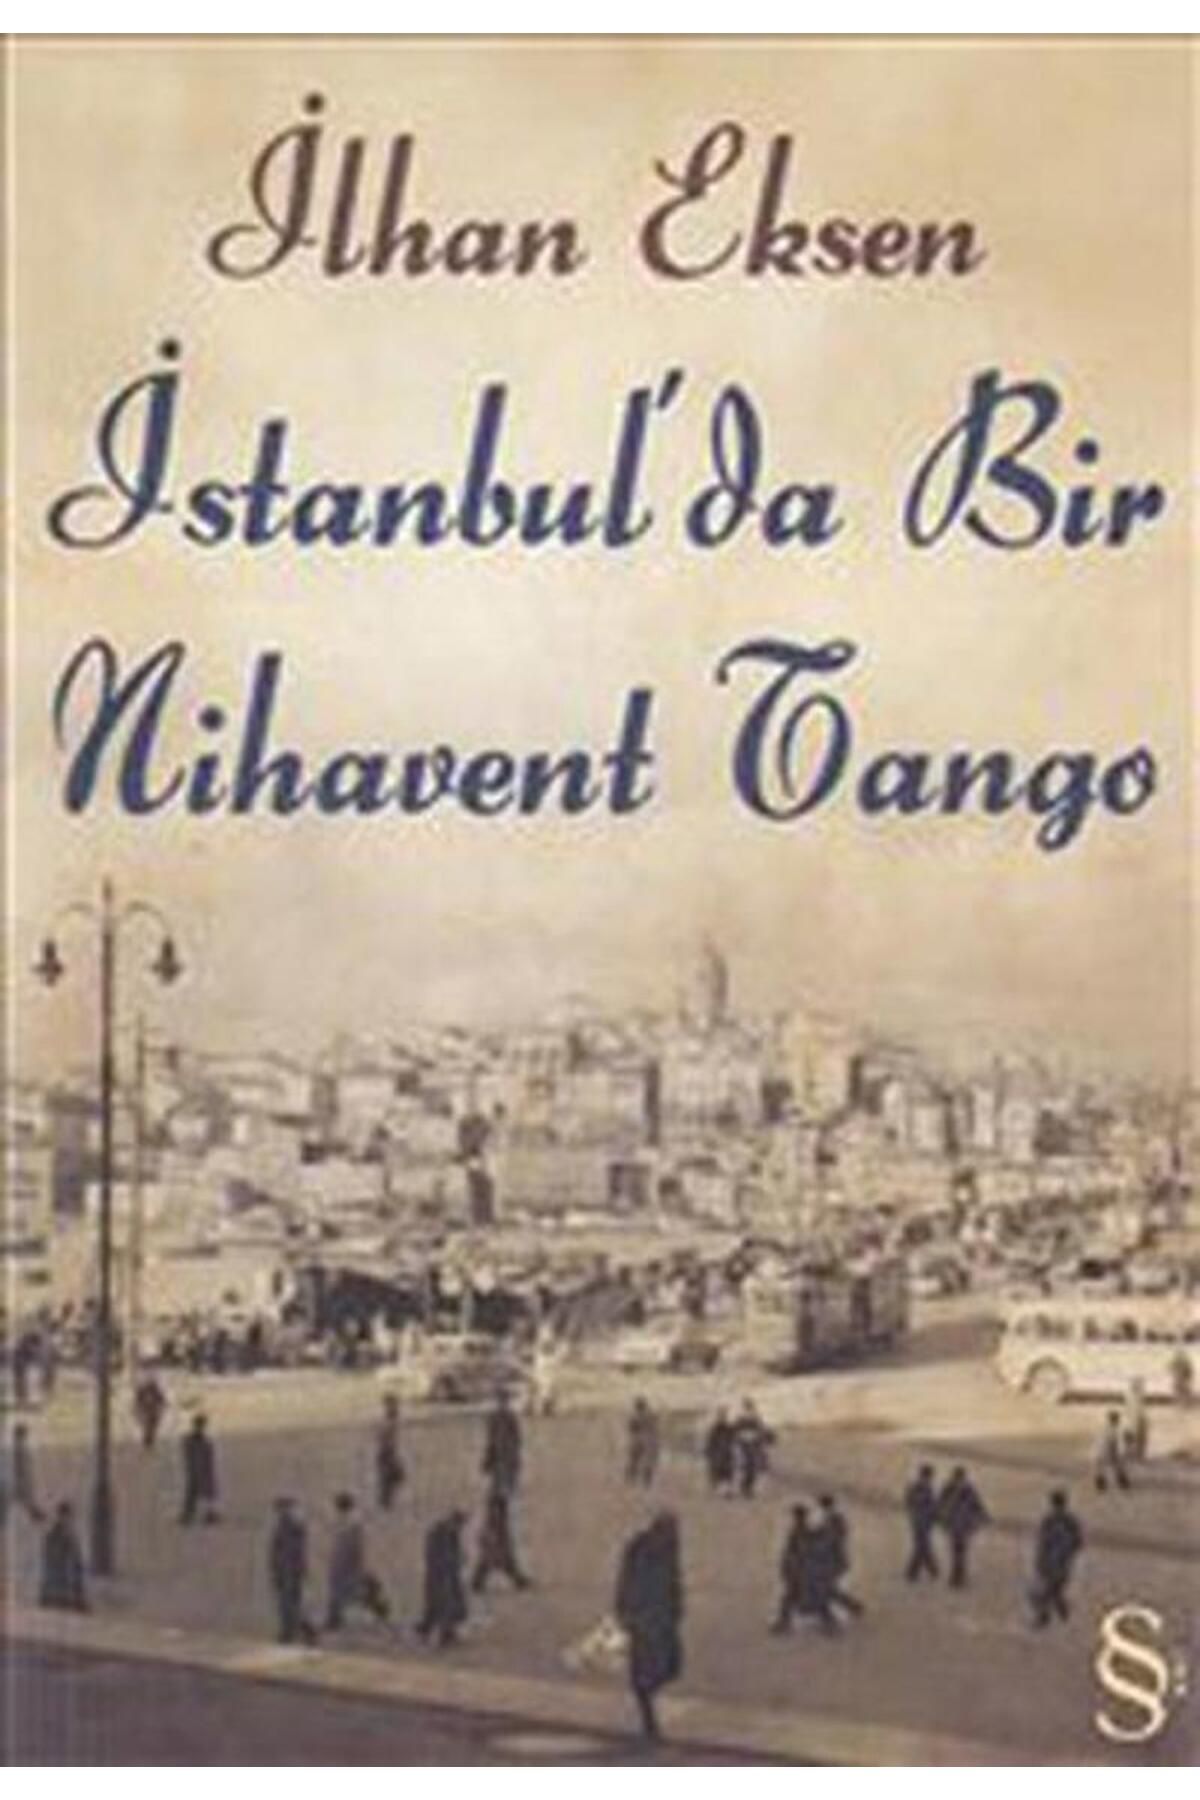 Everest Yayınları Istanbul’da Bir Nihavent Tango, Ilhan Eksen, , Istanbul’da Bir Nihavent Tango Kitab